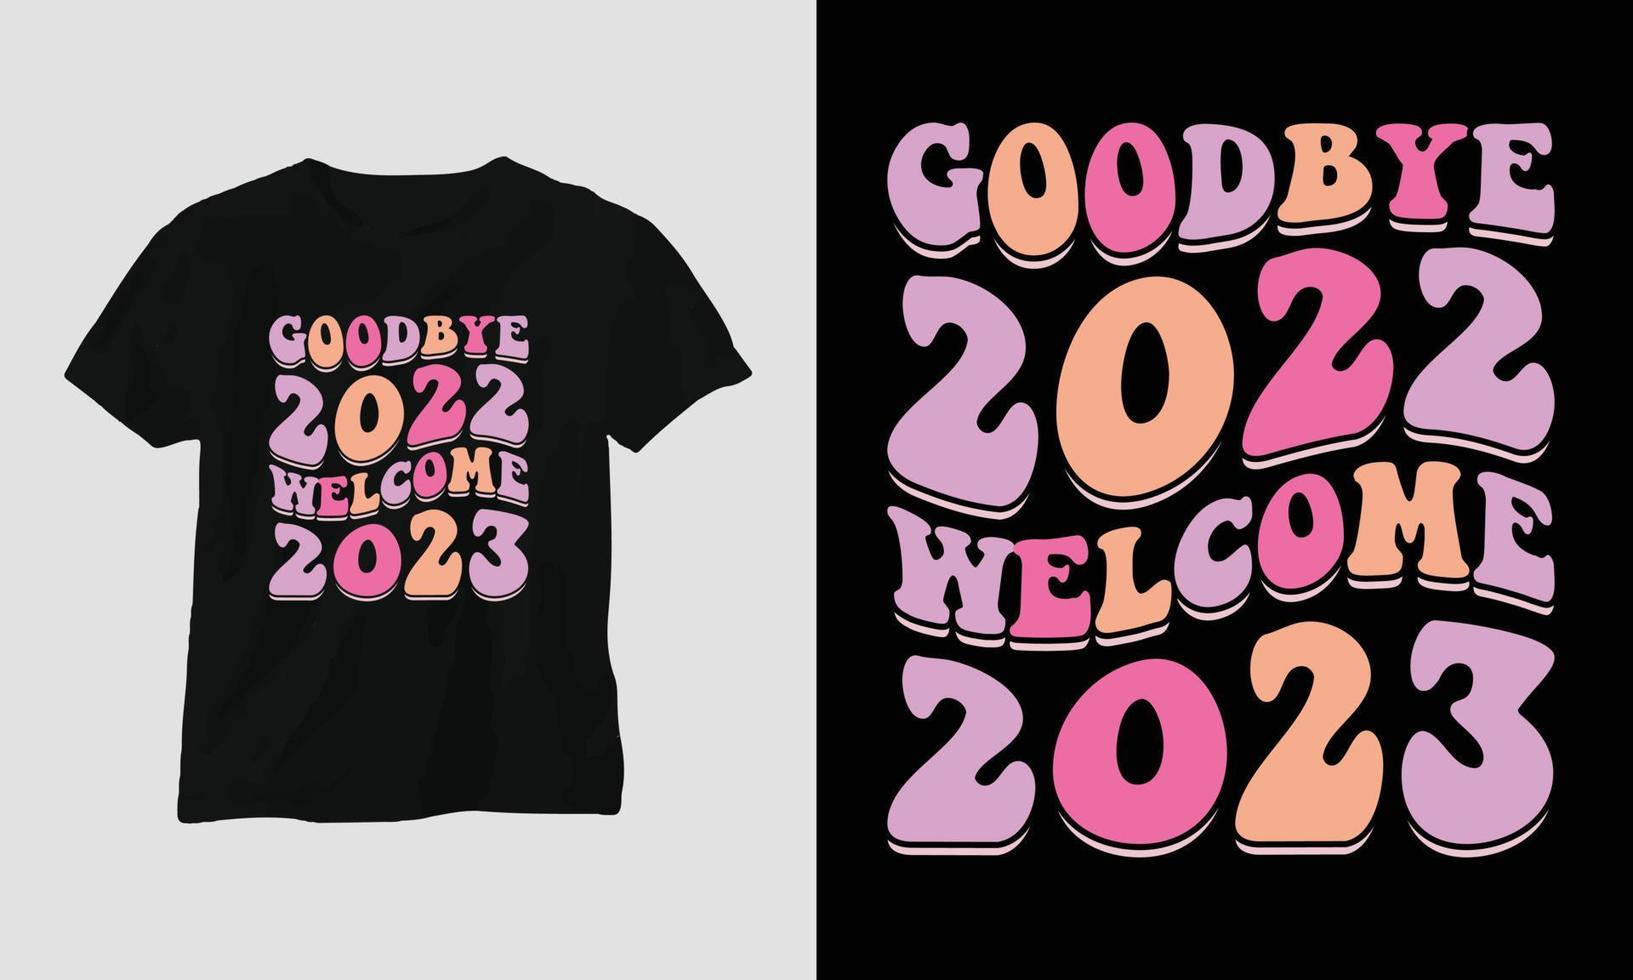 adeus 2022 bem-vindo 2023 - camiseta e design de roupas para o ano novo 2023 vetor